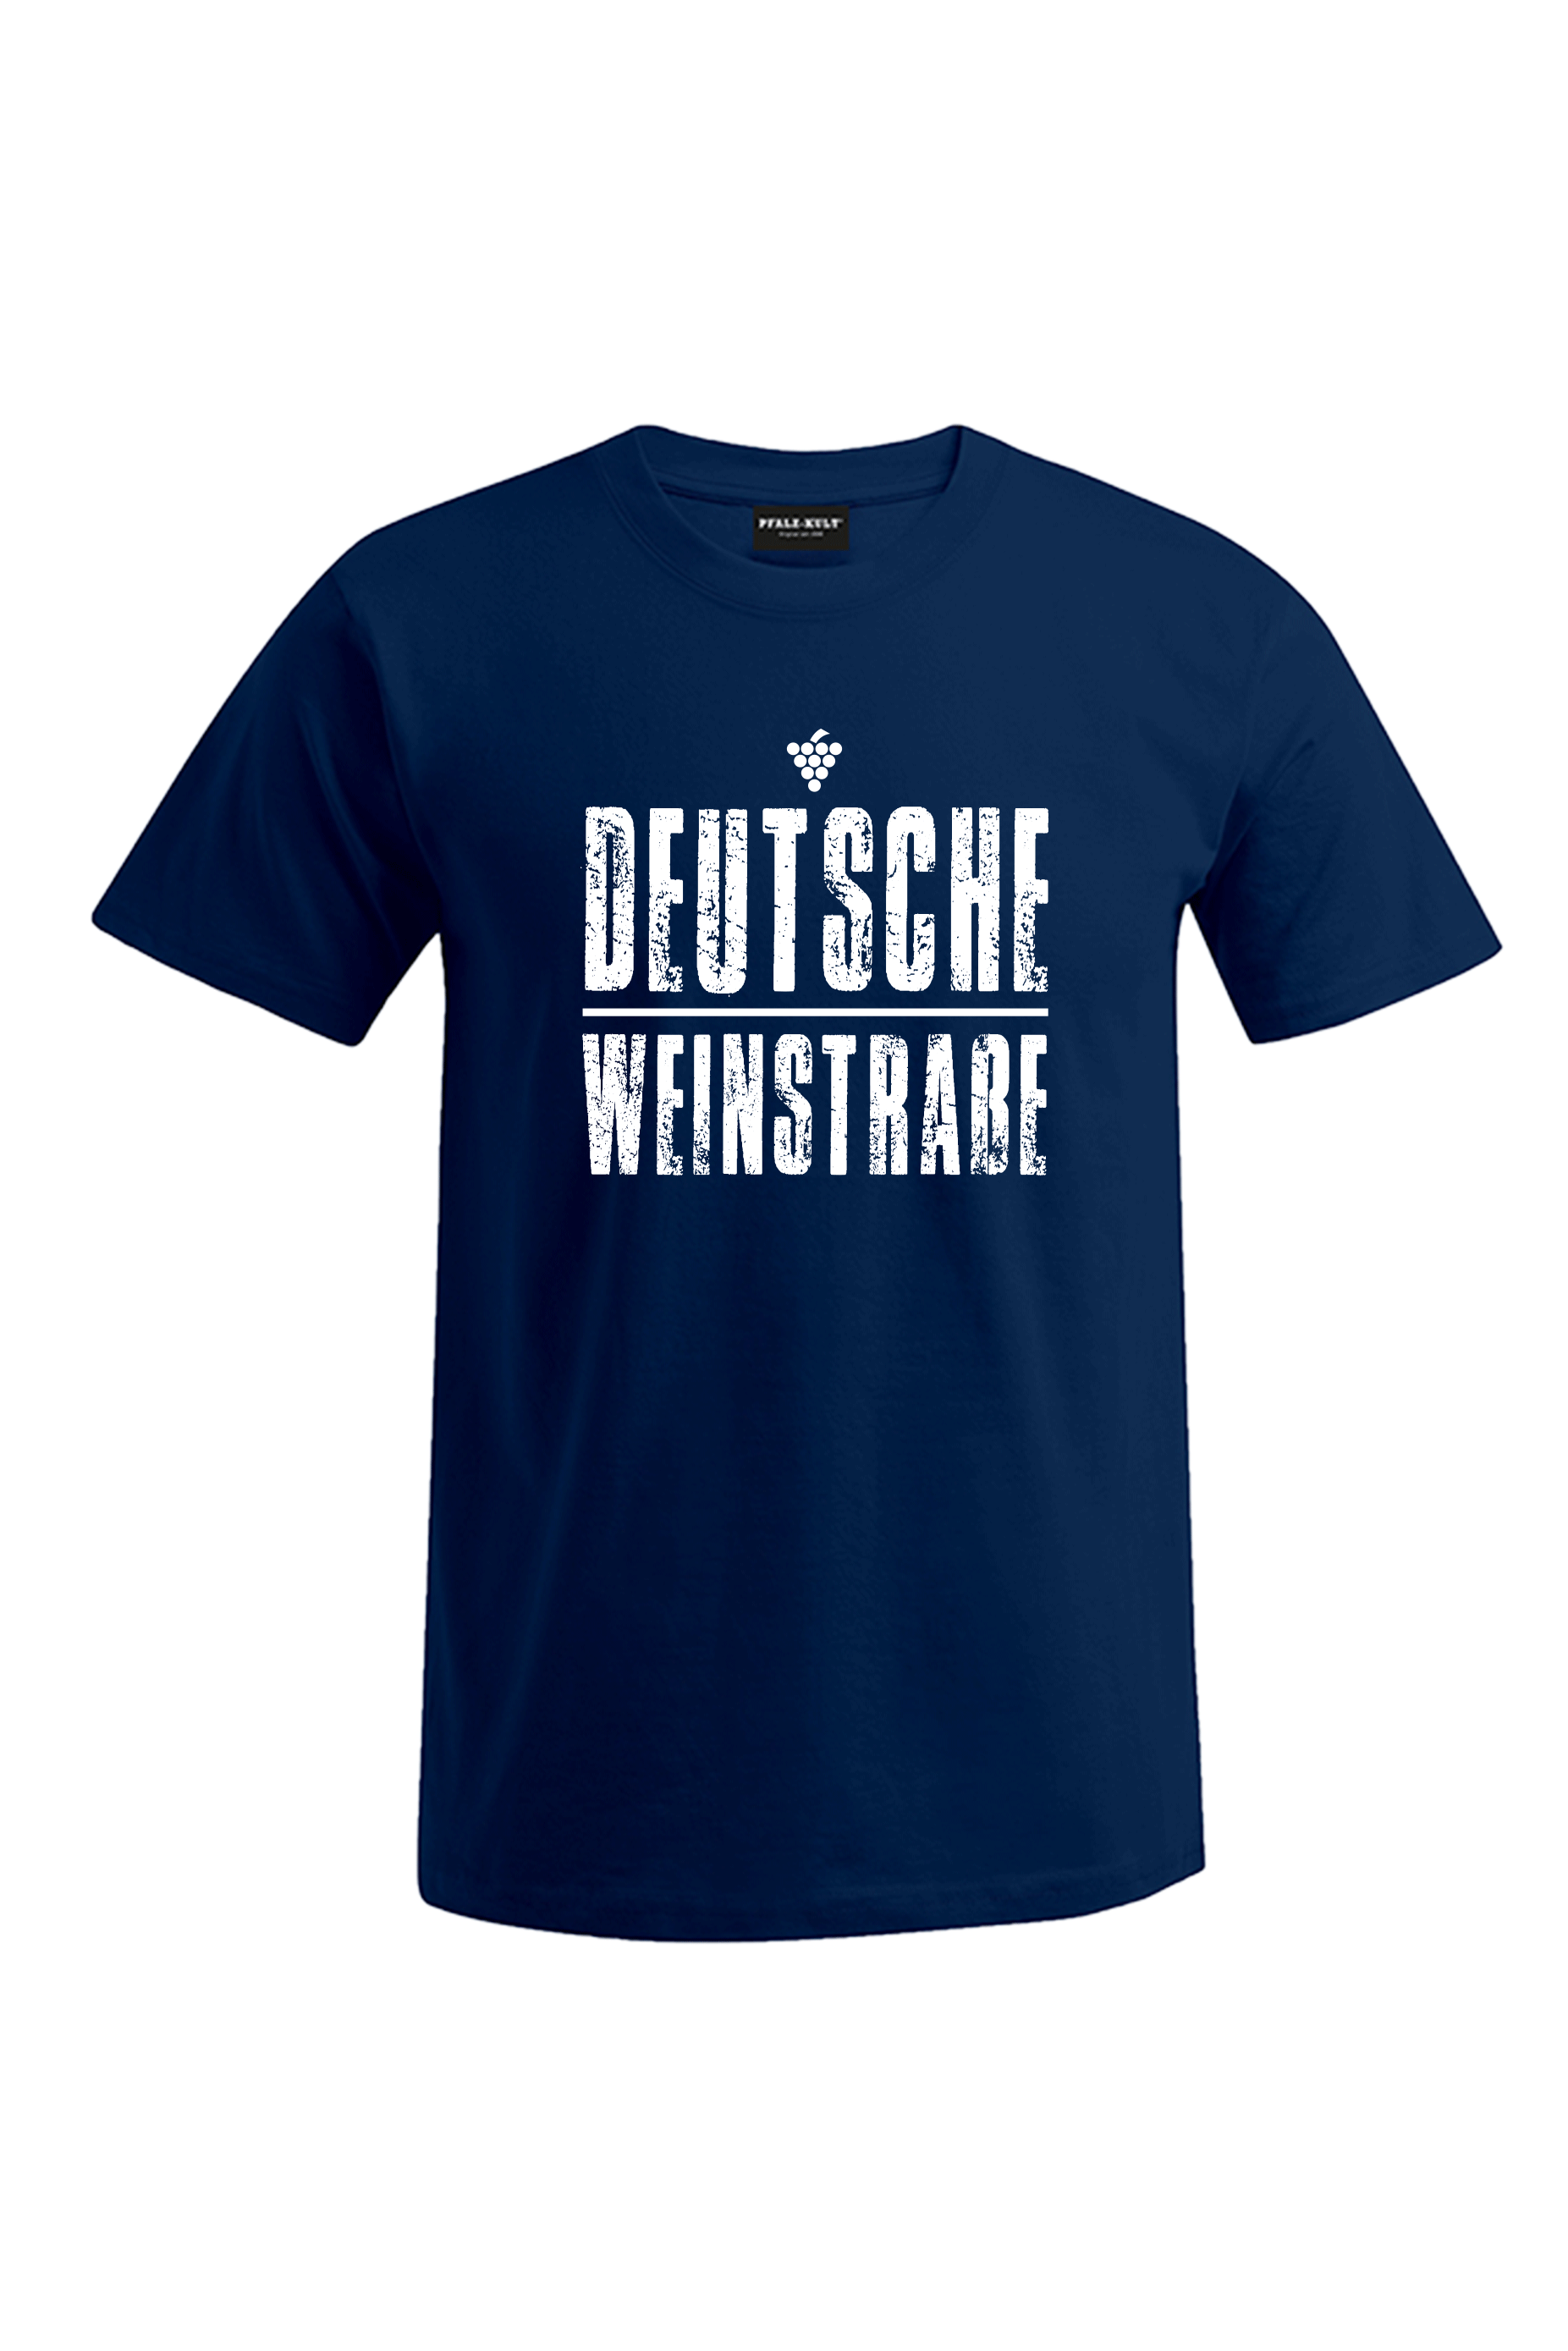 Blaues T-Shirt mit dem Aufdruck "Deutsche Weinstrasse" .  Das ideale Geschenk für jedes Pfalzkind vom Textildruck Spezialisten aus Bad Dürkheim.